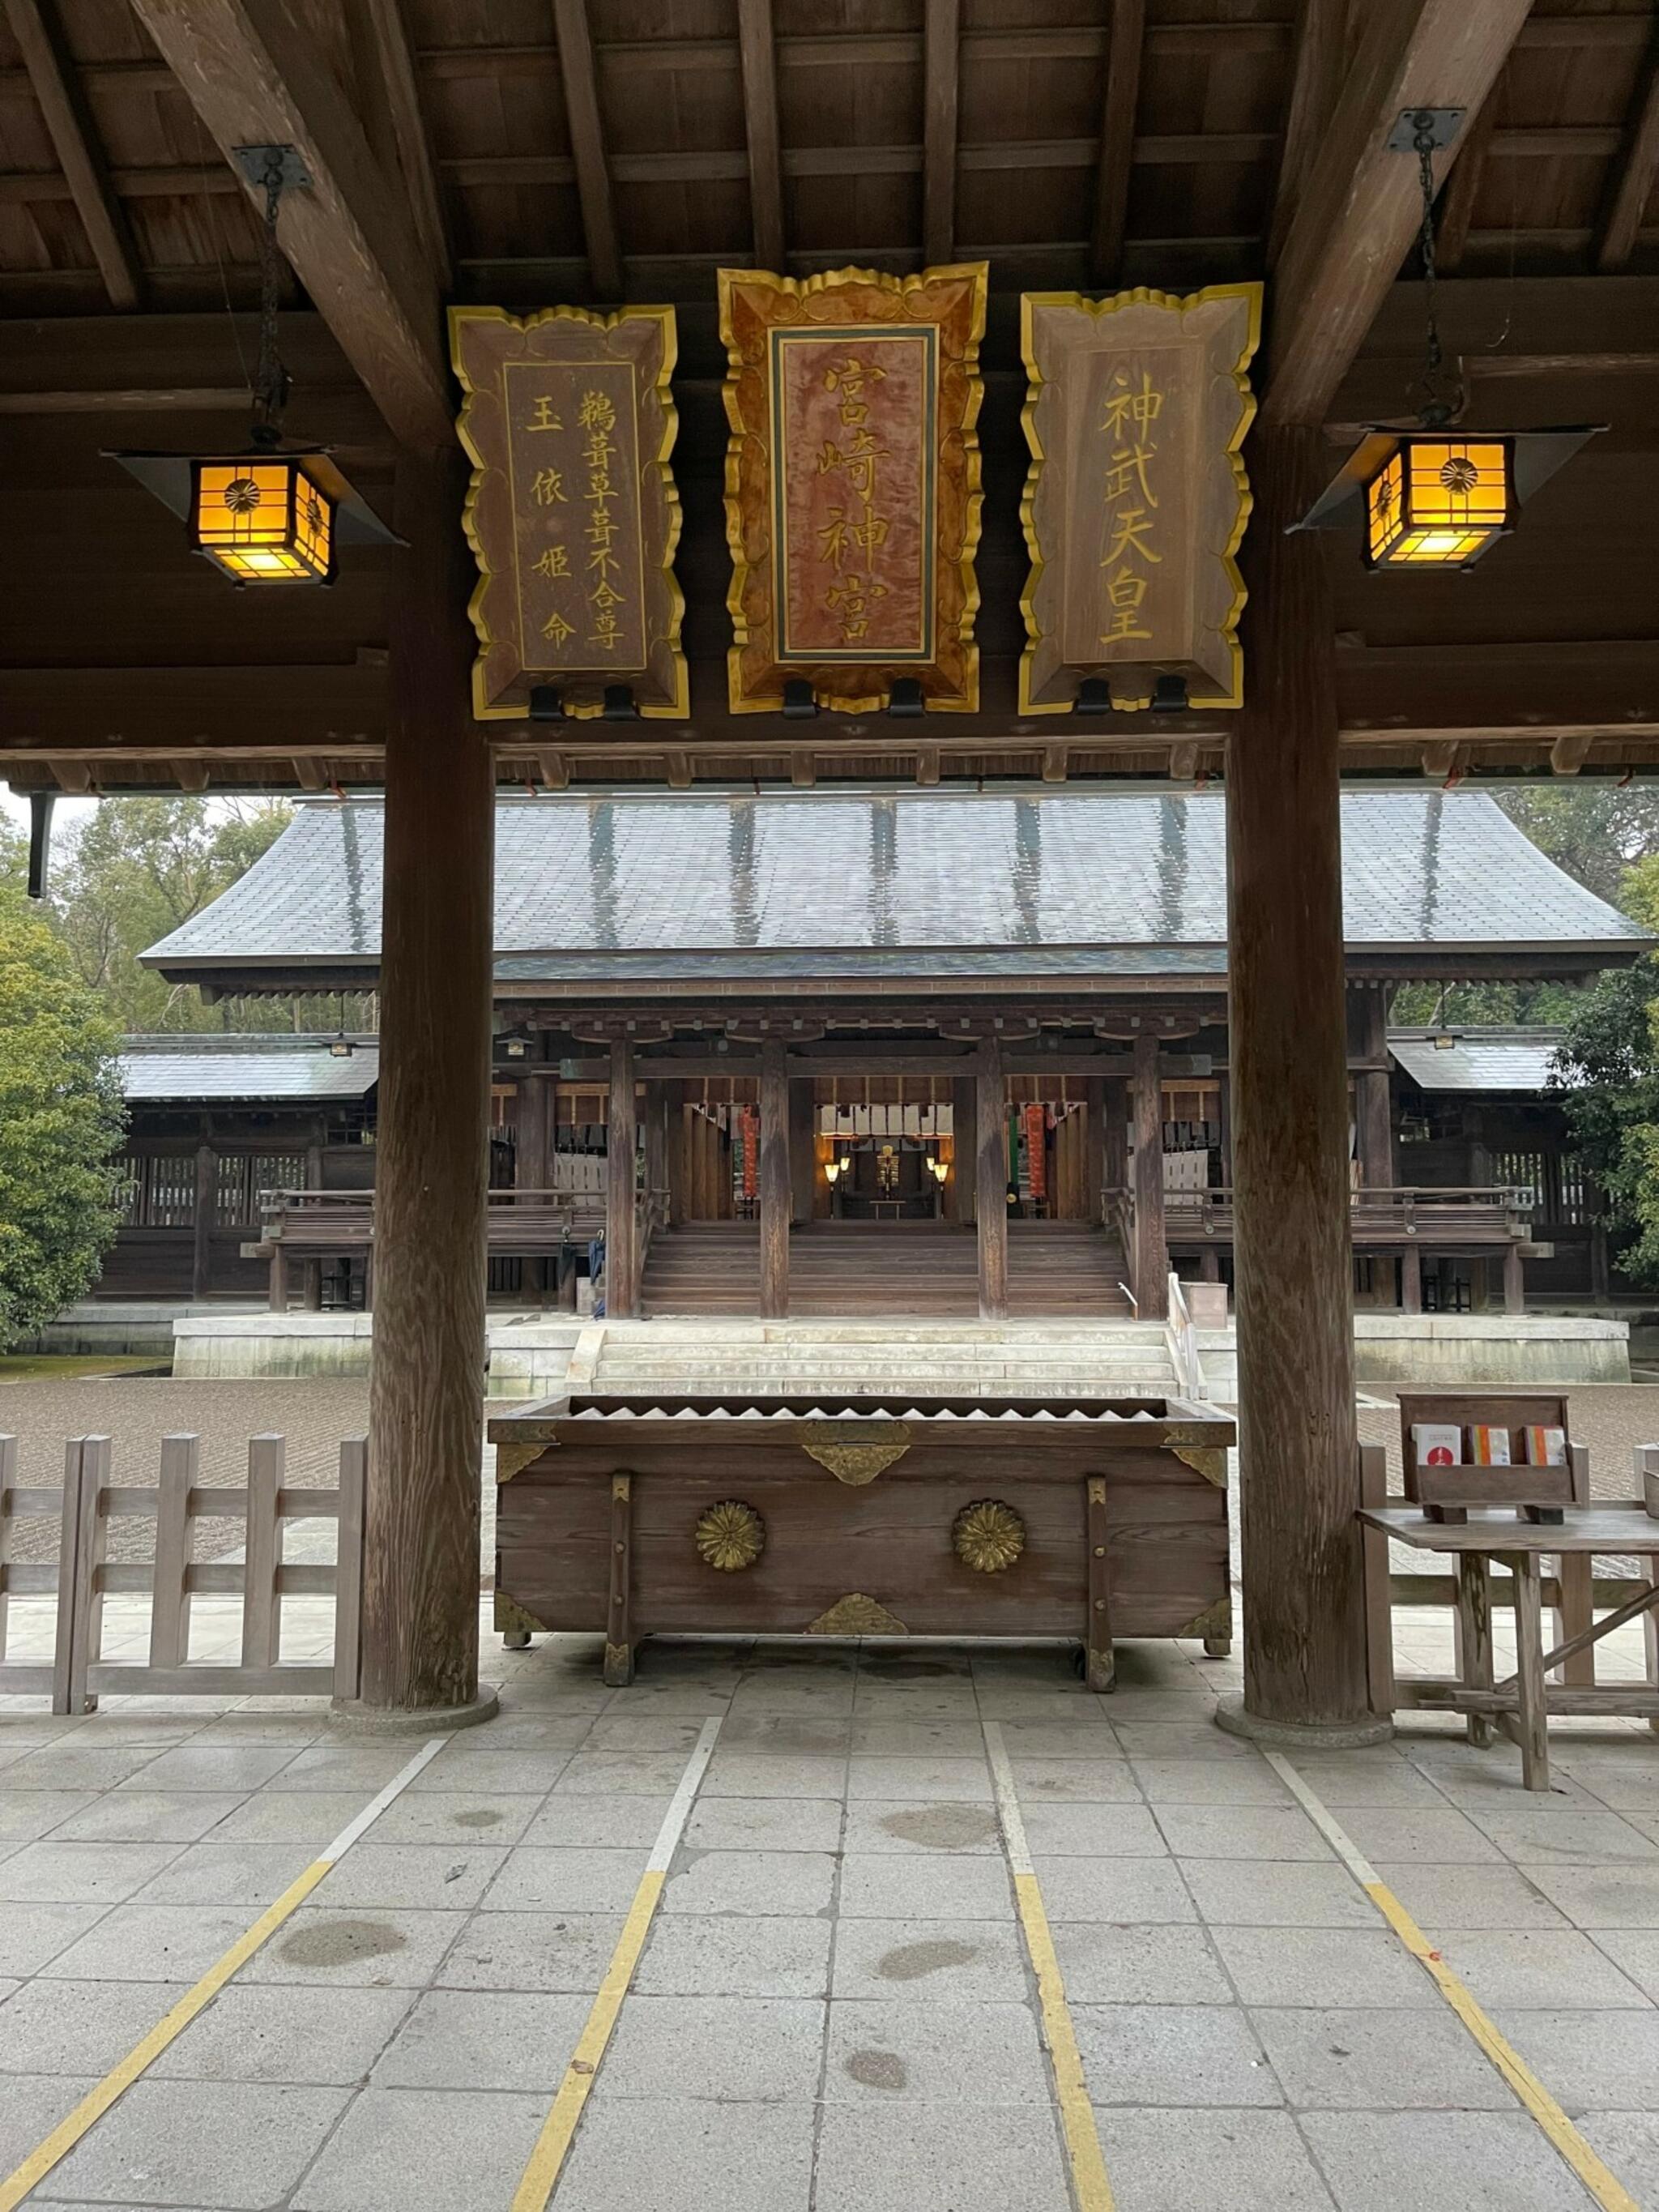 宮崎神宮社務所 - 宮崎市神宮/神社 | Yahoo!マップ